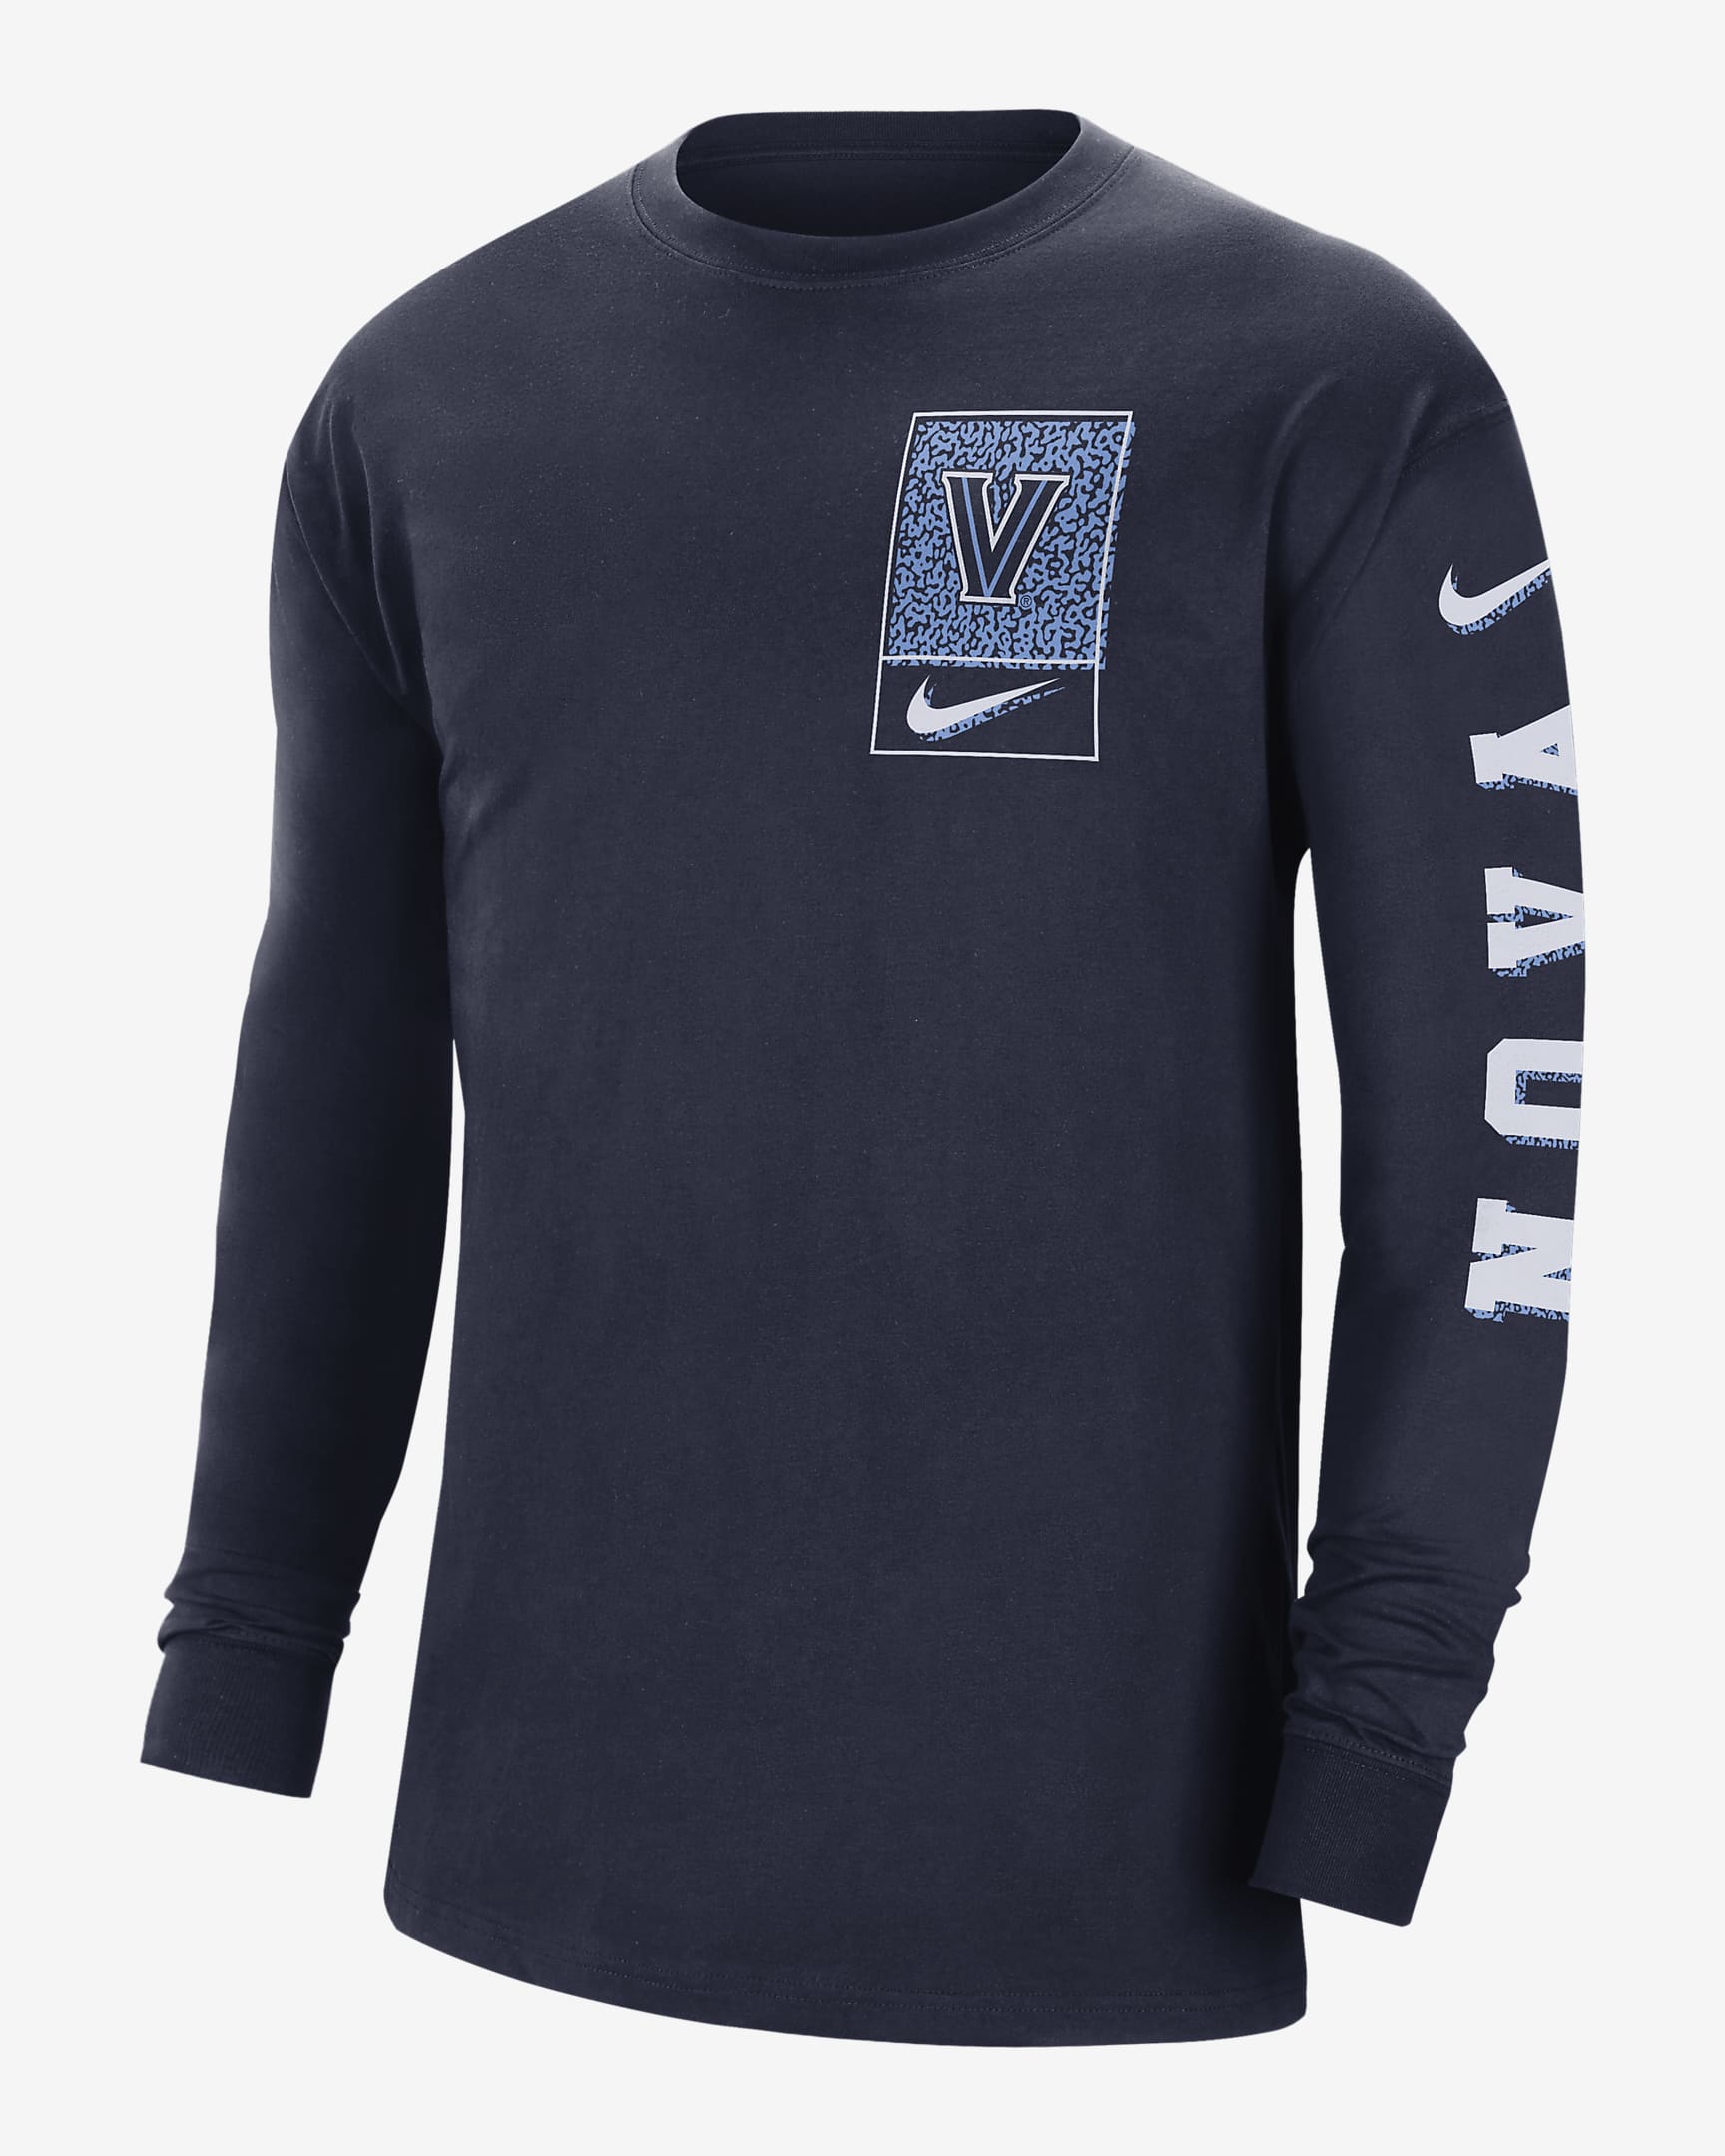 Villanova Men's Nike College Long-Sleeve T-Shirt. Nike.com